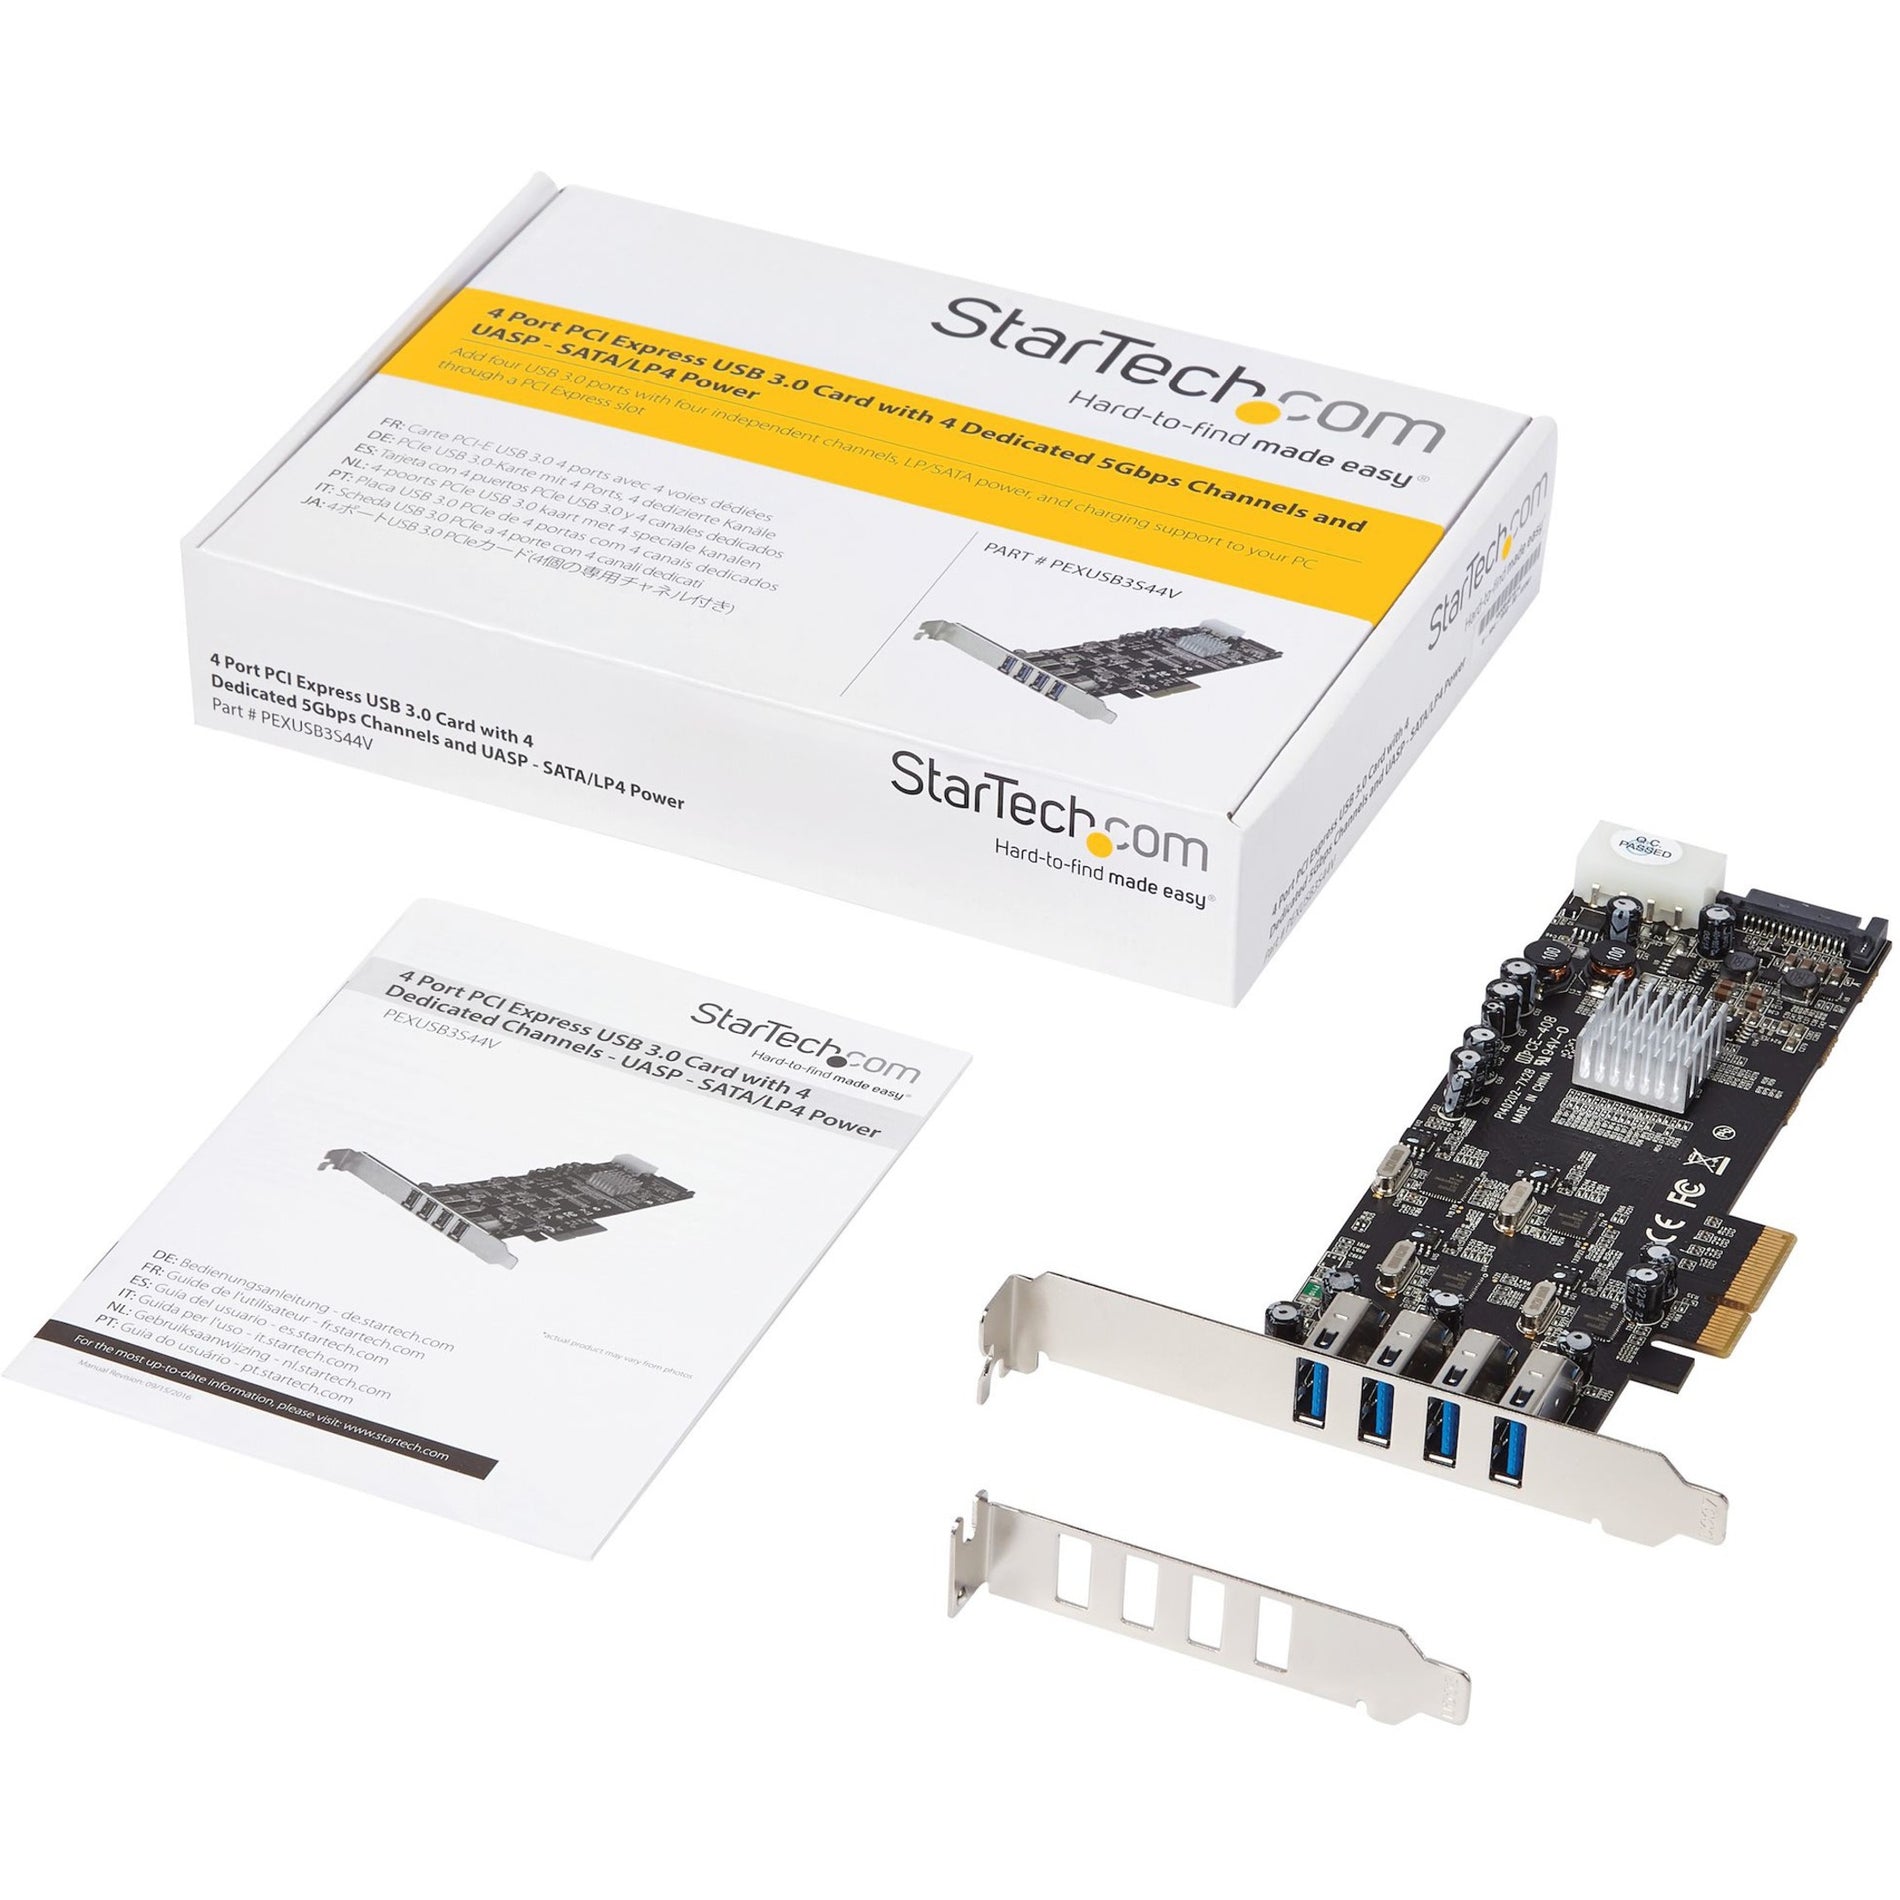 StarTech.com PEXUSB3S44V 4 Port PCIe USB Card Adapter with UASP - SATA/LP4 Power